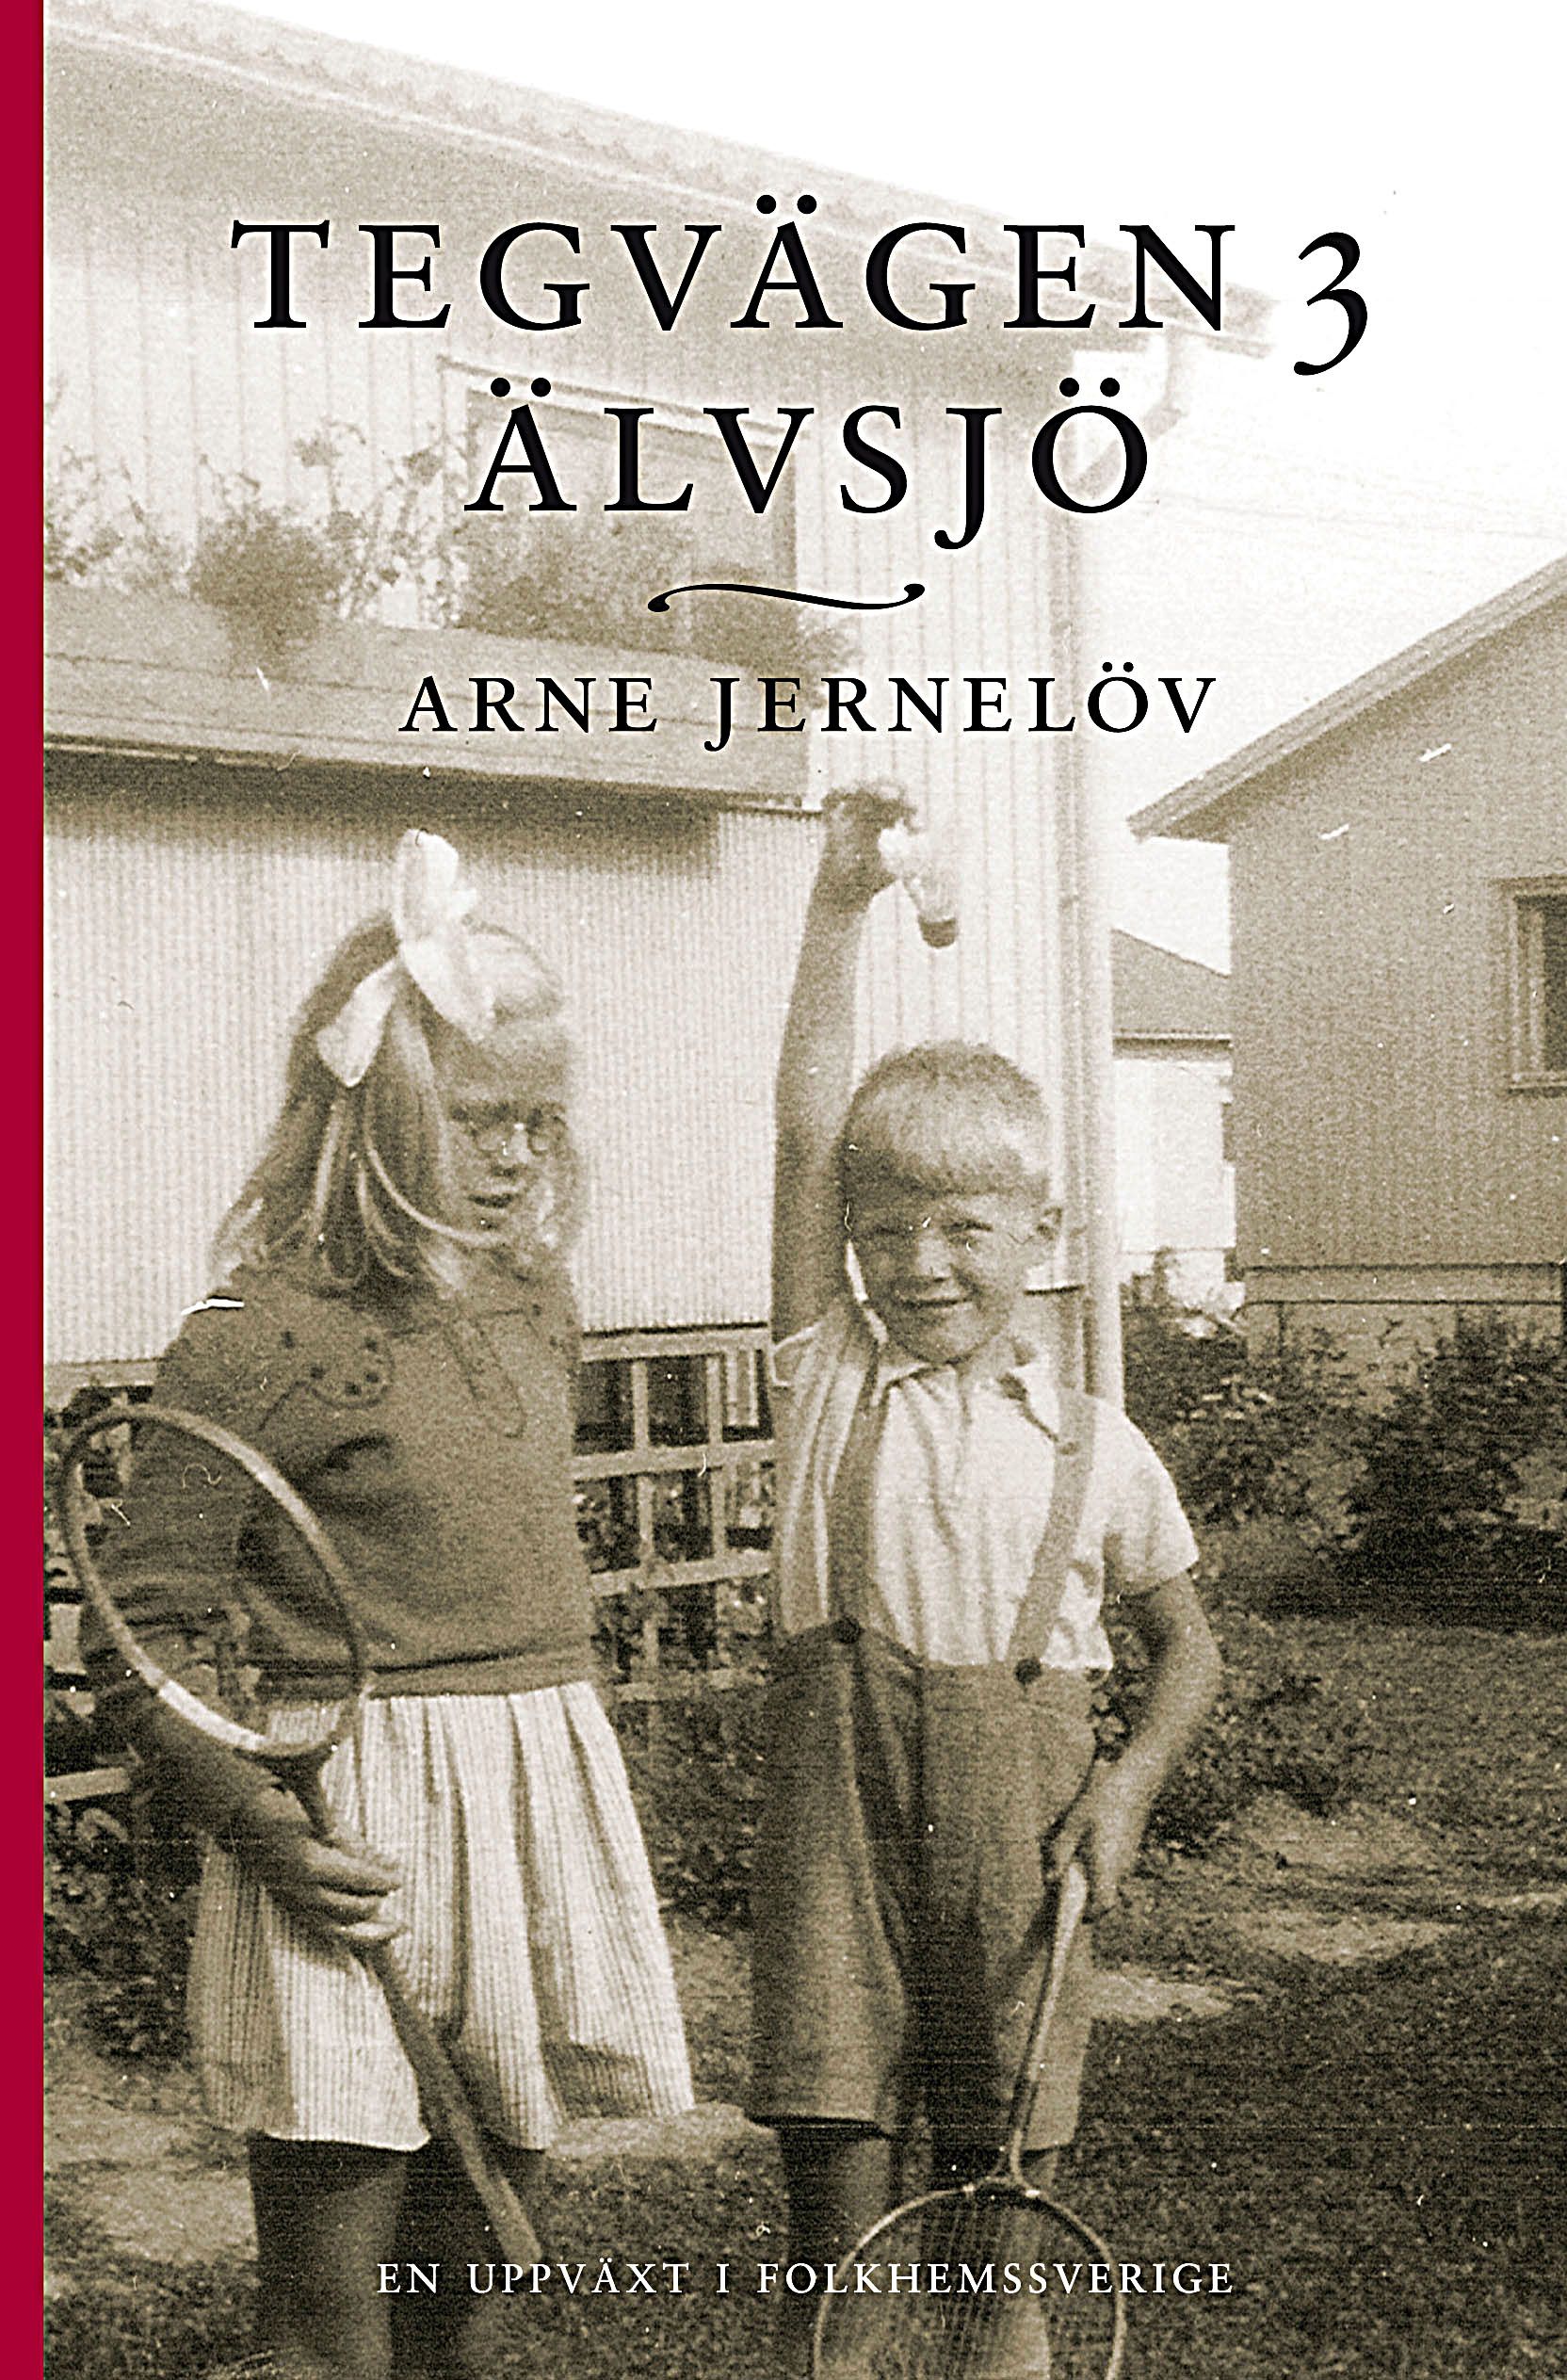 Tegvägen 3, Älvsjö, e-bog af Arne Jernelöv